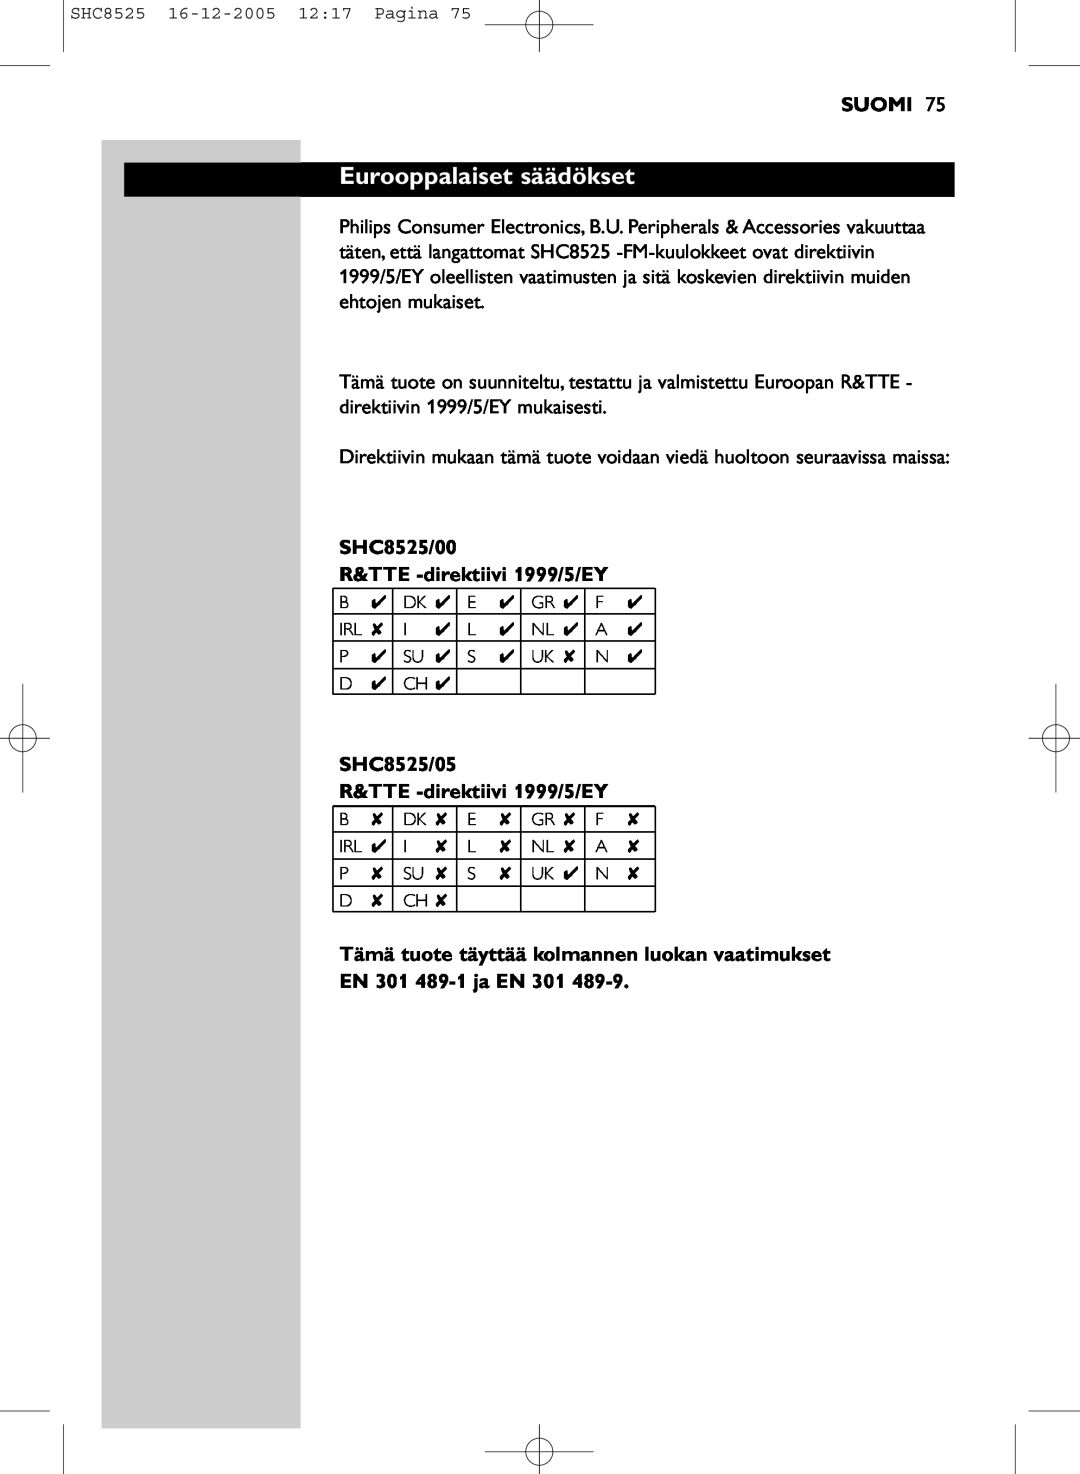 Event electronic manual Eurooppalaiset säädökset, Suomi, SHC8525/00 R&TTE -direktiivi1999/5/EY, EN 301 489-1ja EN 301 